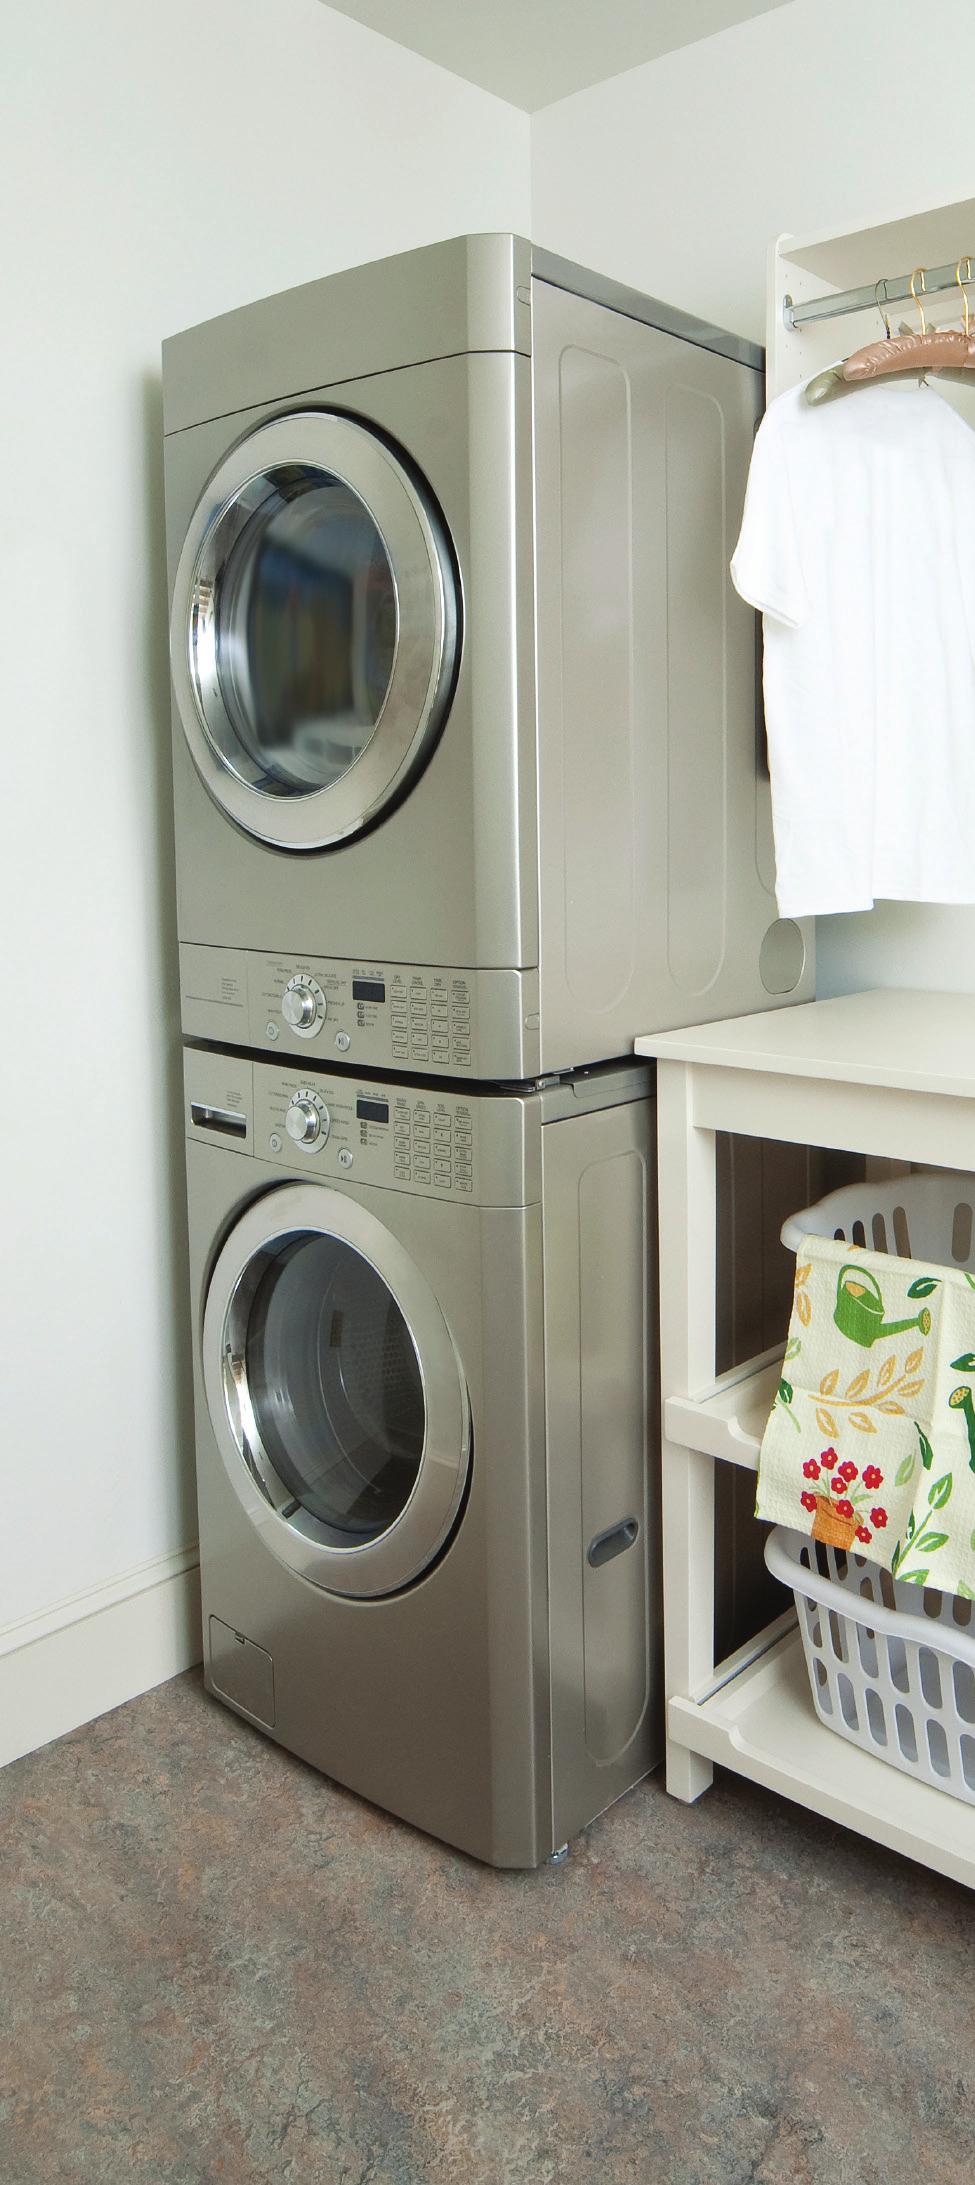 Cuando compre una nueva lavadora, considere comprar un equipo con carga frontal. Seleccione la temperatura apropiada más baja del agua.